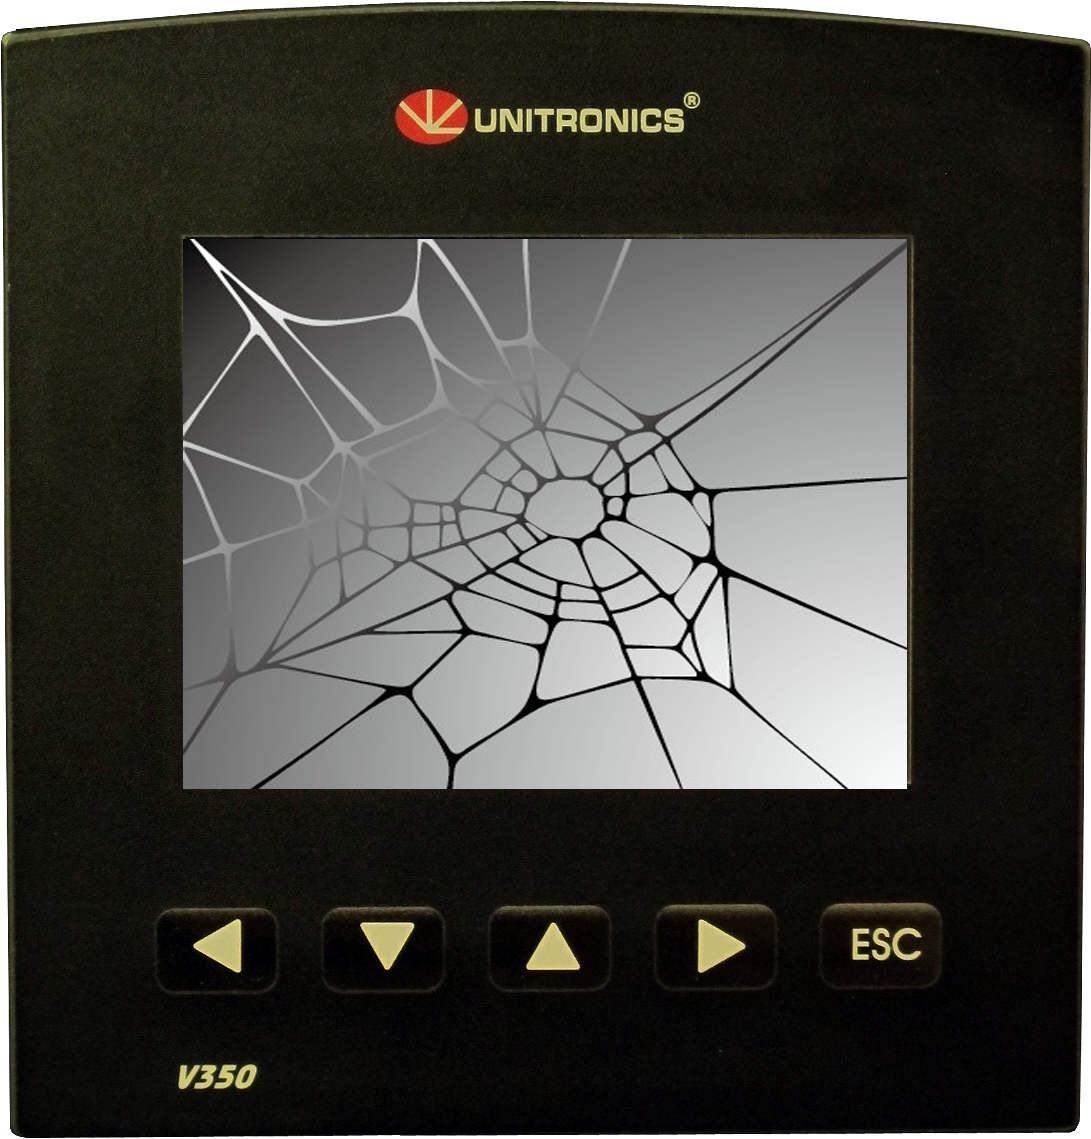 Broken V350 Screen Repair - Dm便送料無料【aquos Compact Sh-02h】【disney Mobile Dm-01h】【aquos (1200x1600), Png Download